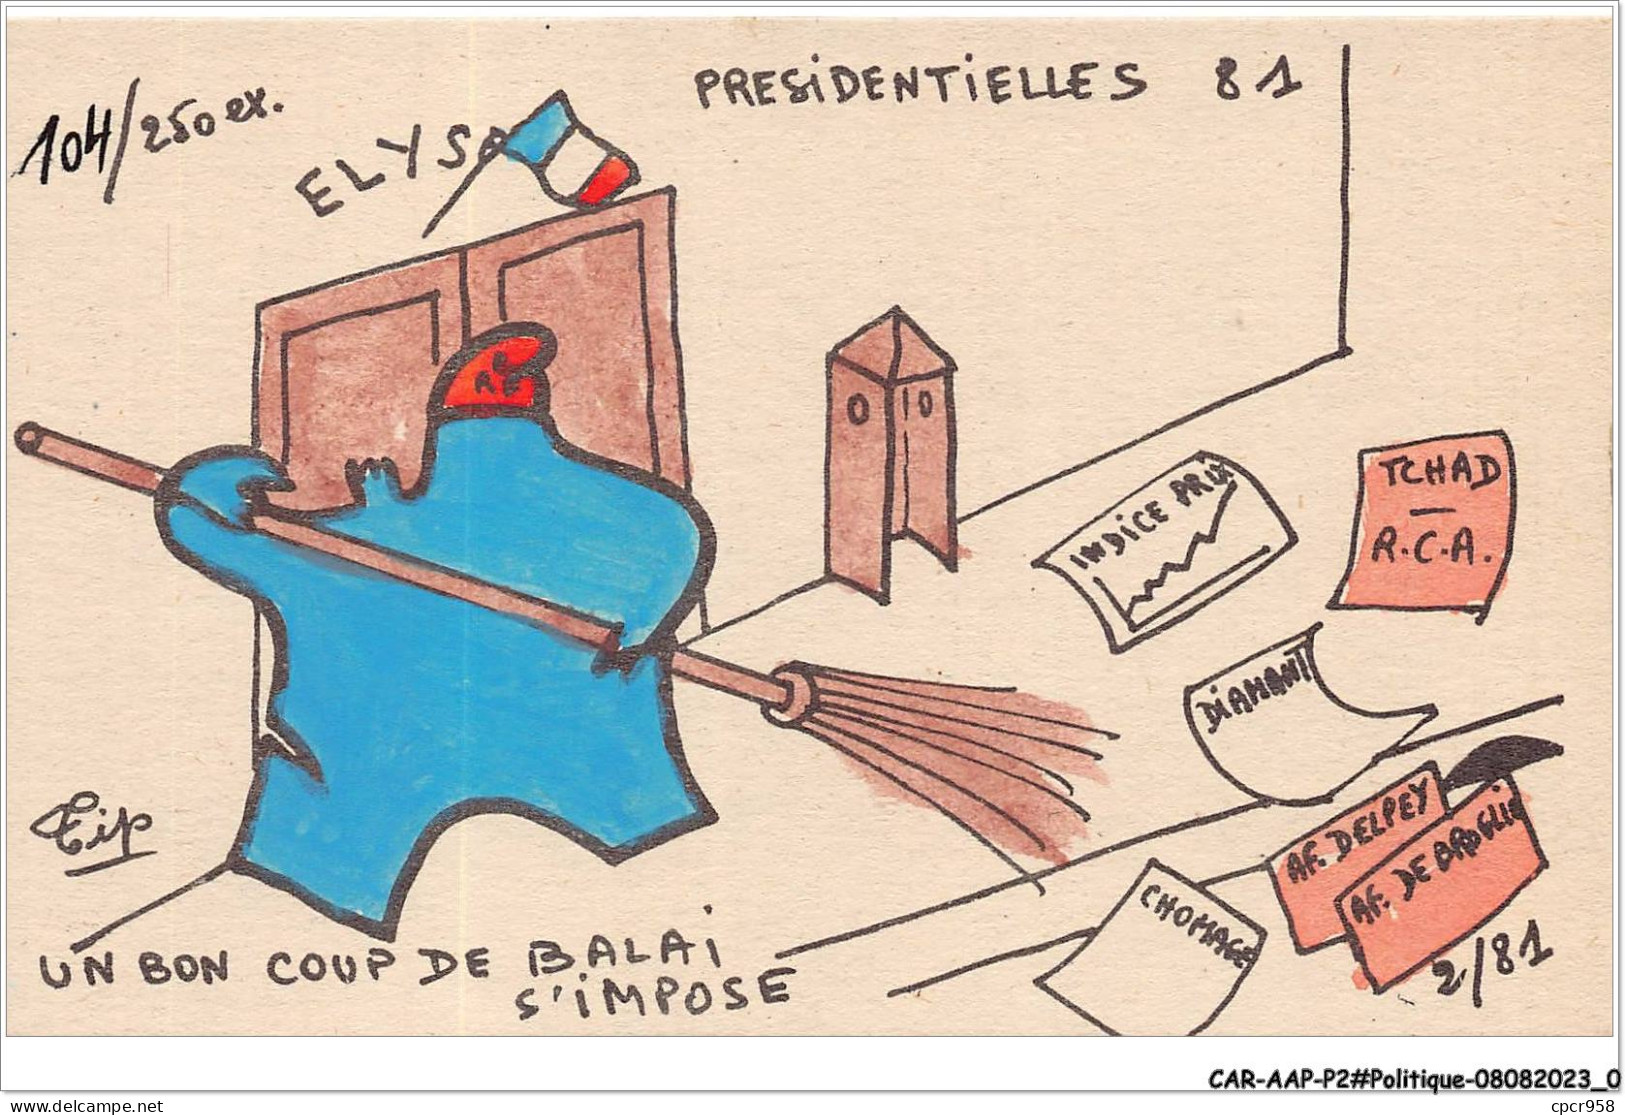 CAR-AAPP2-0083 - POLITIQUE - Presidentielles 81 - Un Bon Coup De Palais S'impose - Partiti Politici & Elezioni